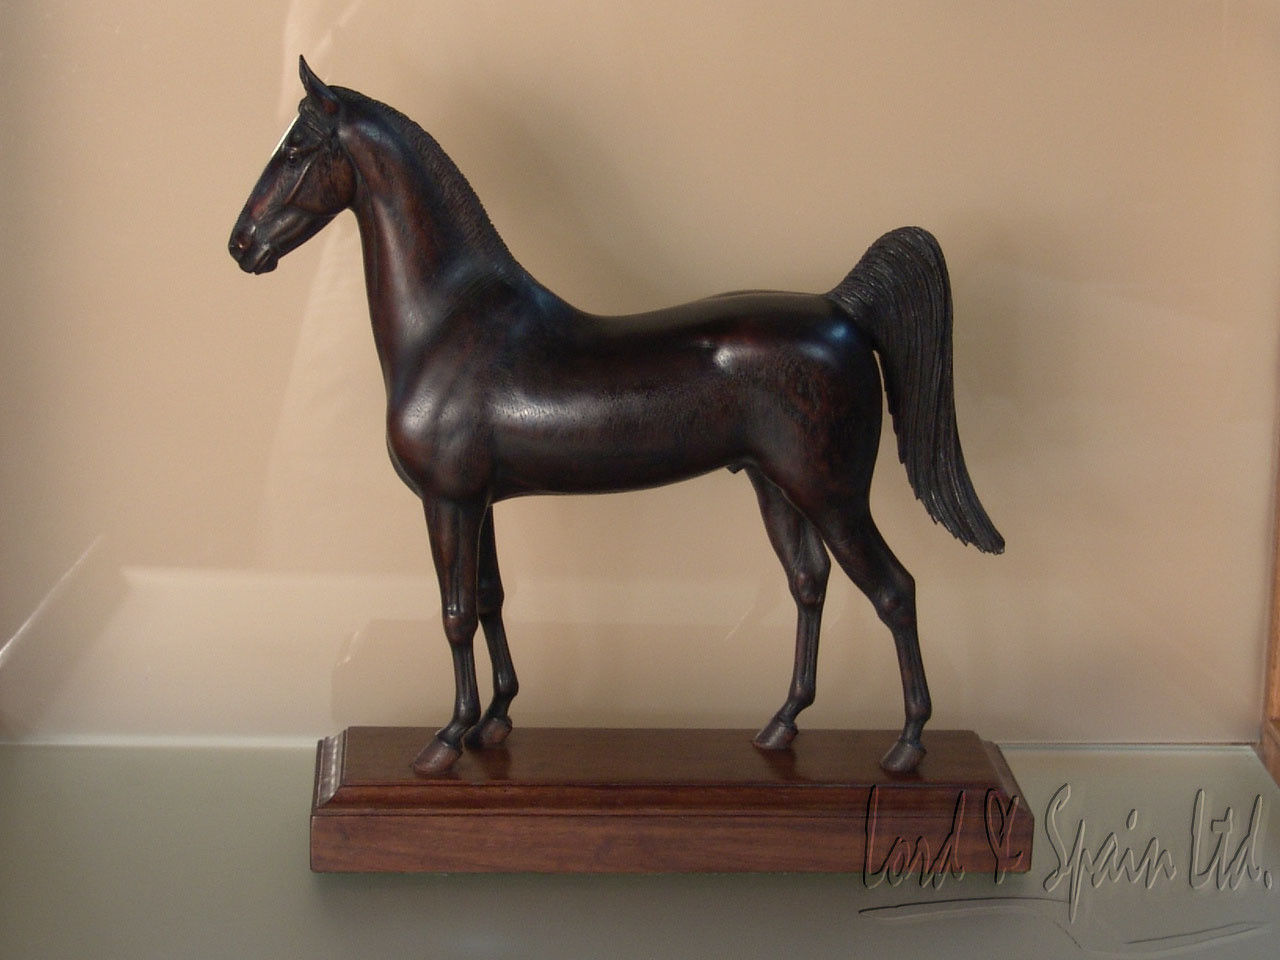 Peter Giba Hand Carved Wood Folk Art Horse Figurine or Sculpture-Signed